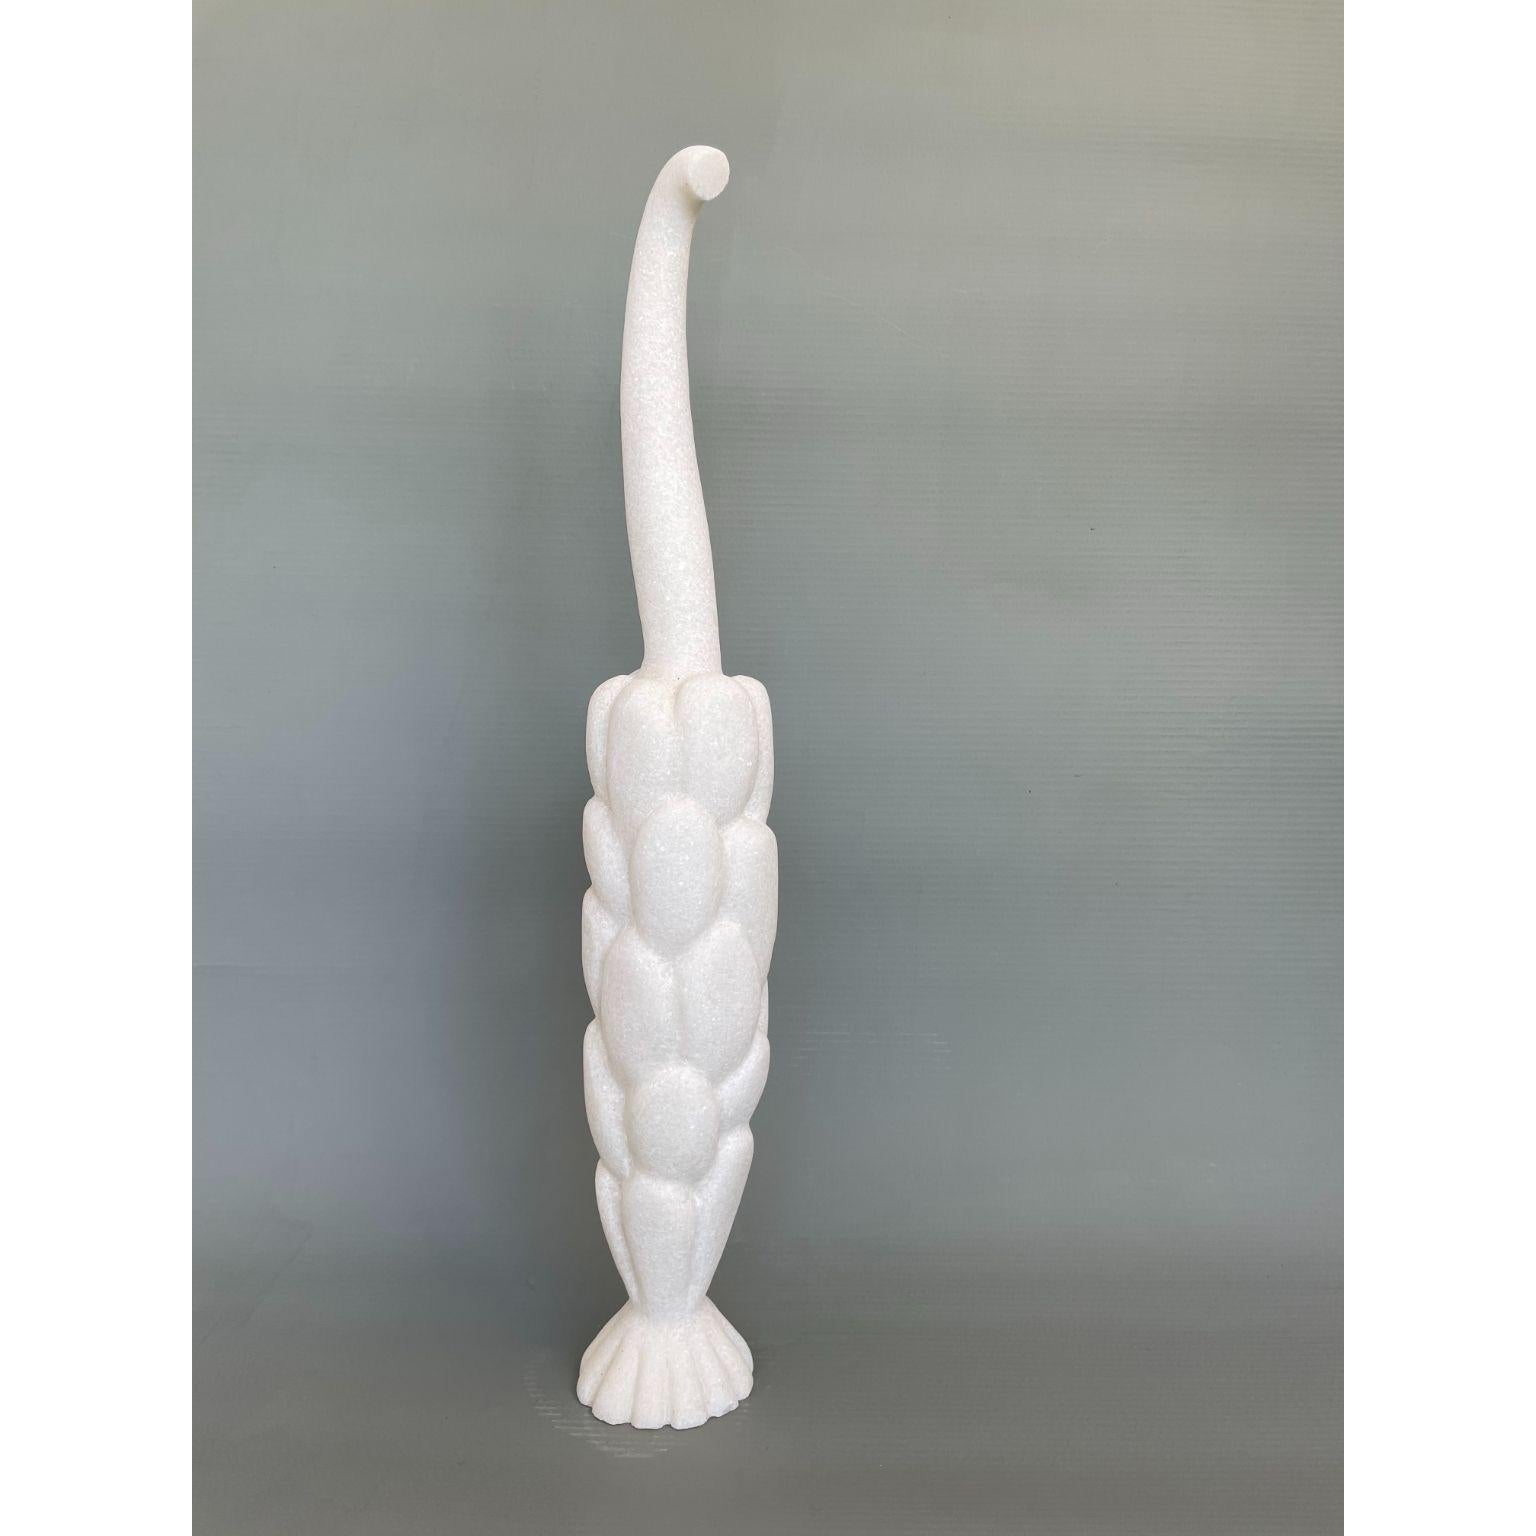 Sprout Sculpture en marbre sculptée à la main par Tom Von Kaenel
Dimensions : D13 x H72 cm
Matériaux : Marbre

Tom von Kaenel, sculpteur et peintre, est né en Suisse en 1961. Déjà au début de sa vie
Dès son enfance, il s'est profondément consacré à